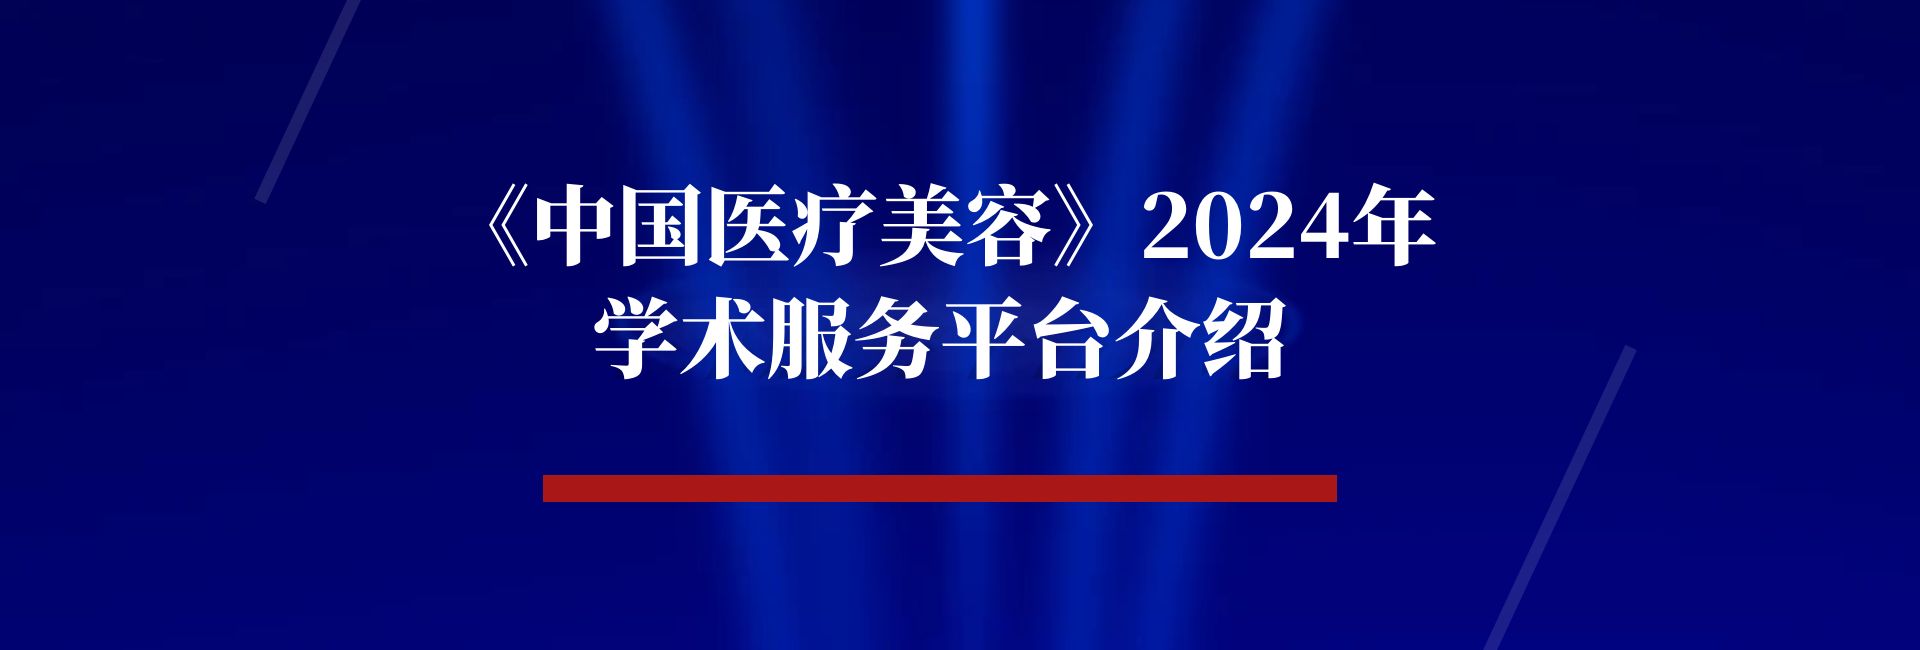 【期刊动态】《中国医疗美容》2024年学术服务平台介绍